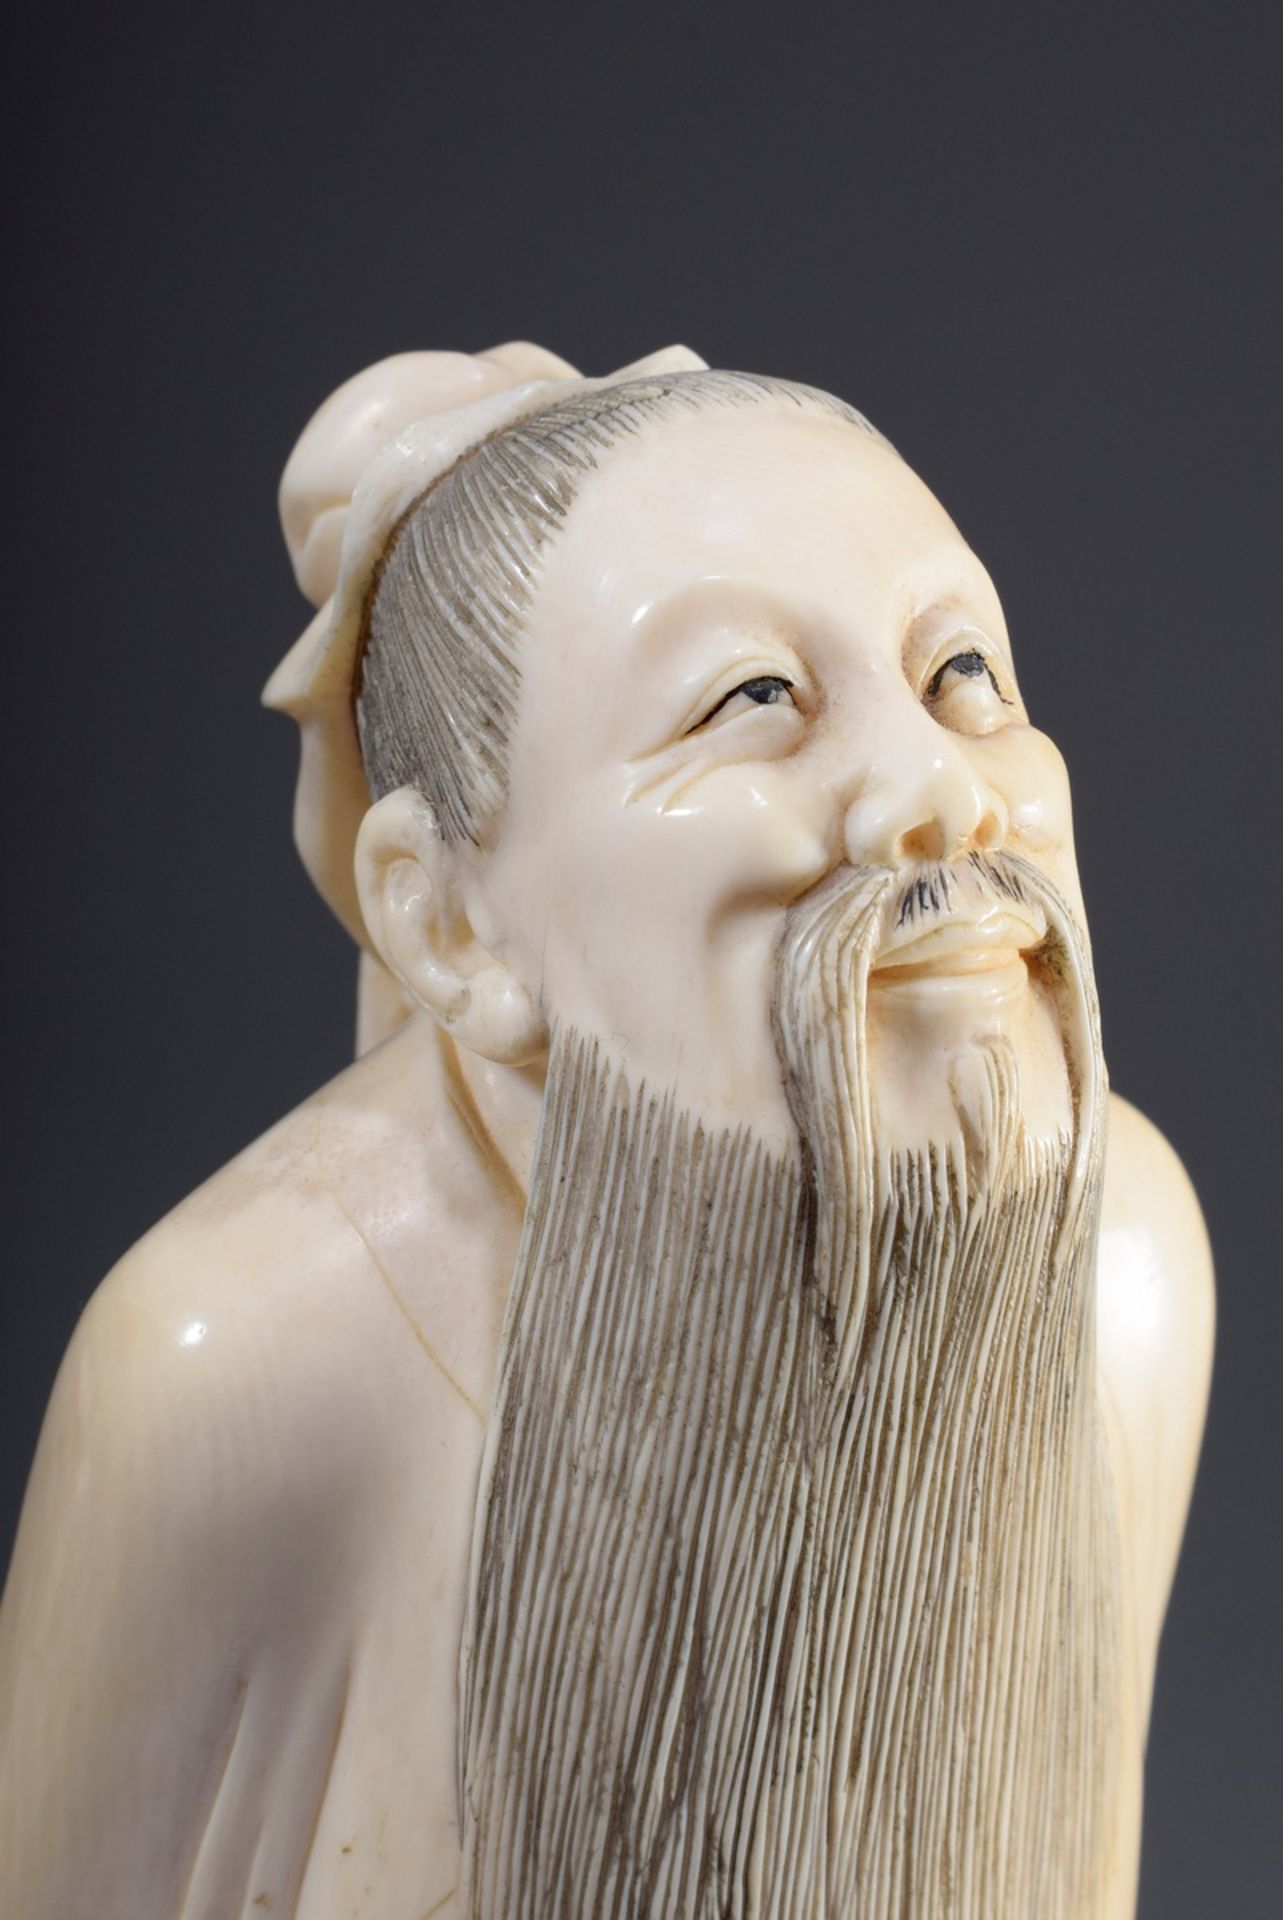 Chinesische Elfenbein Schnitzerei "Konfuzius, de | Chinese ivory carving "Confucius, looking up to - Bild 5 aus 9